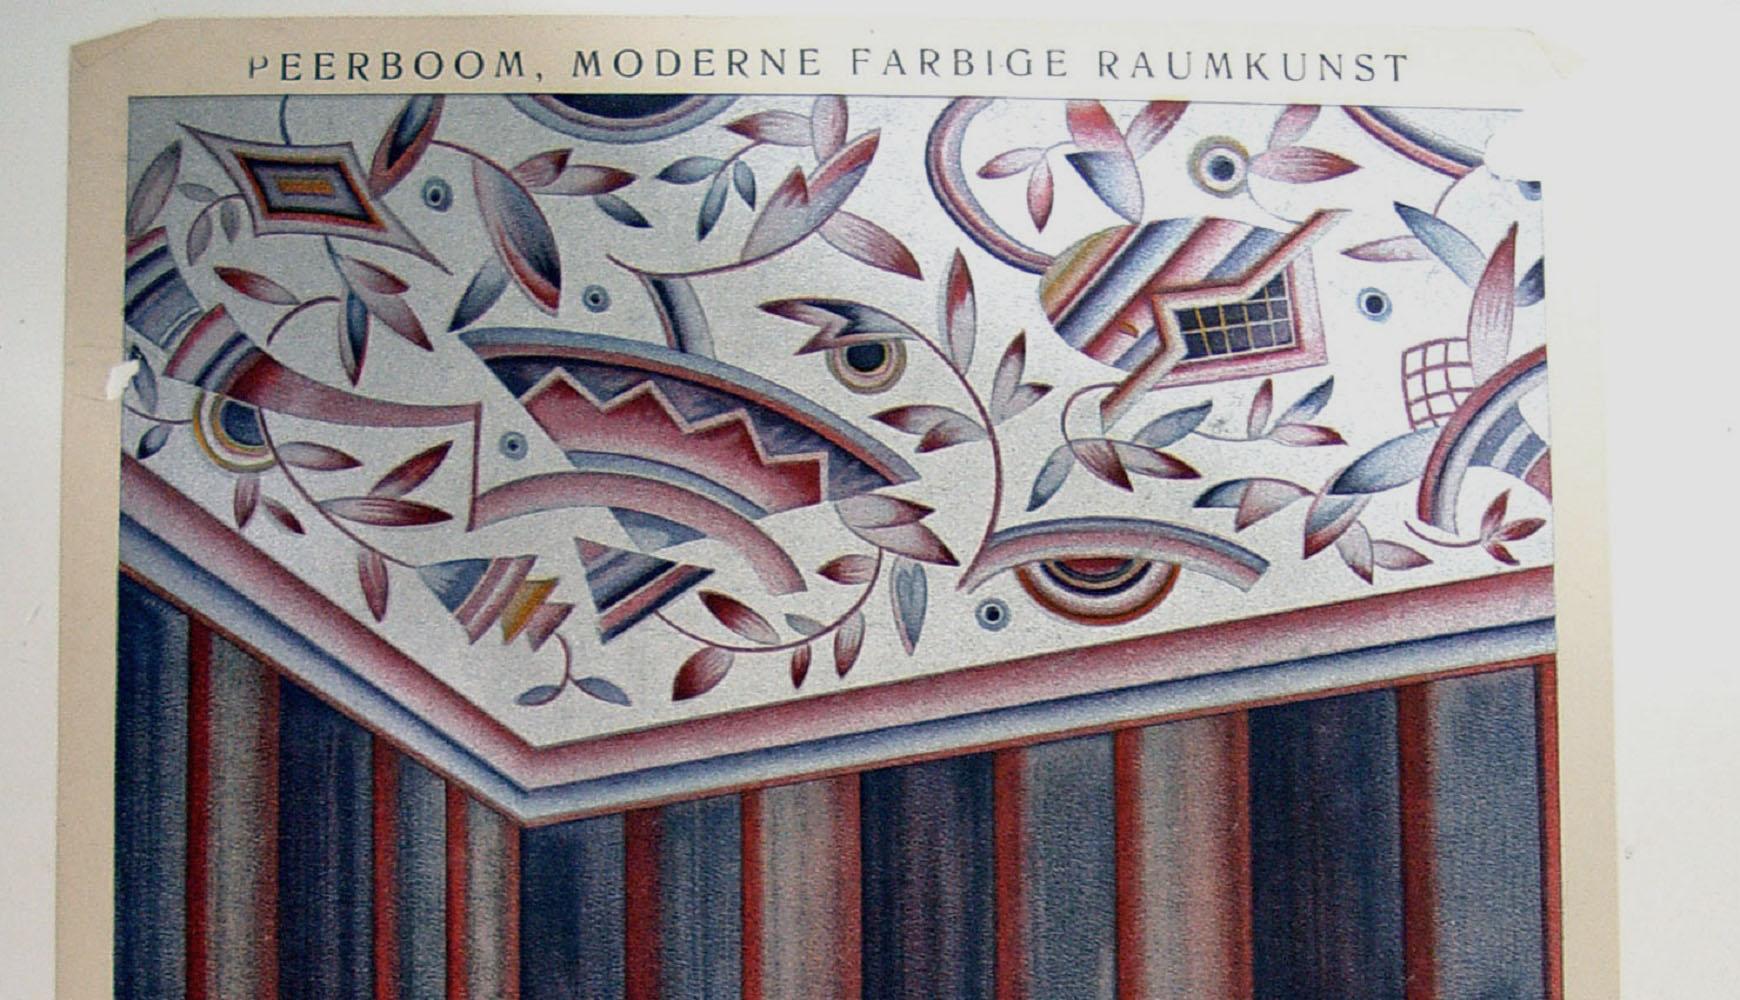 1929 interior design